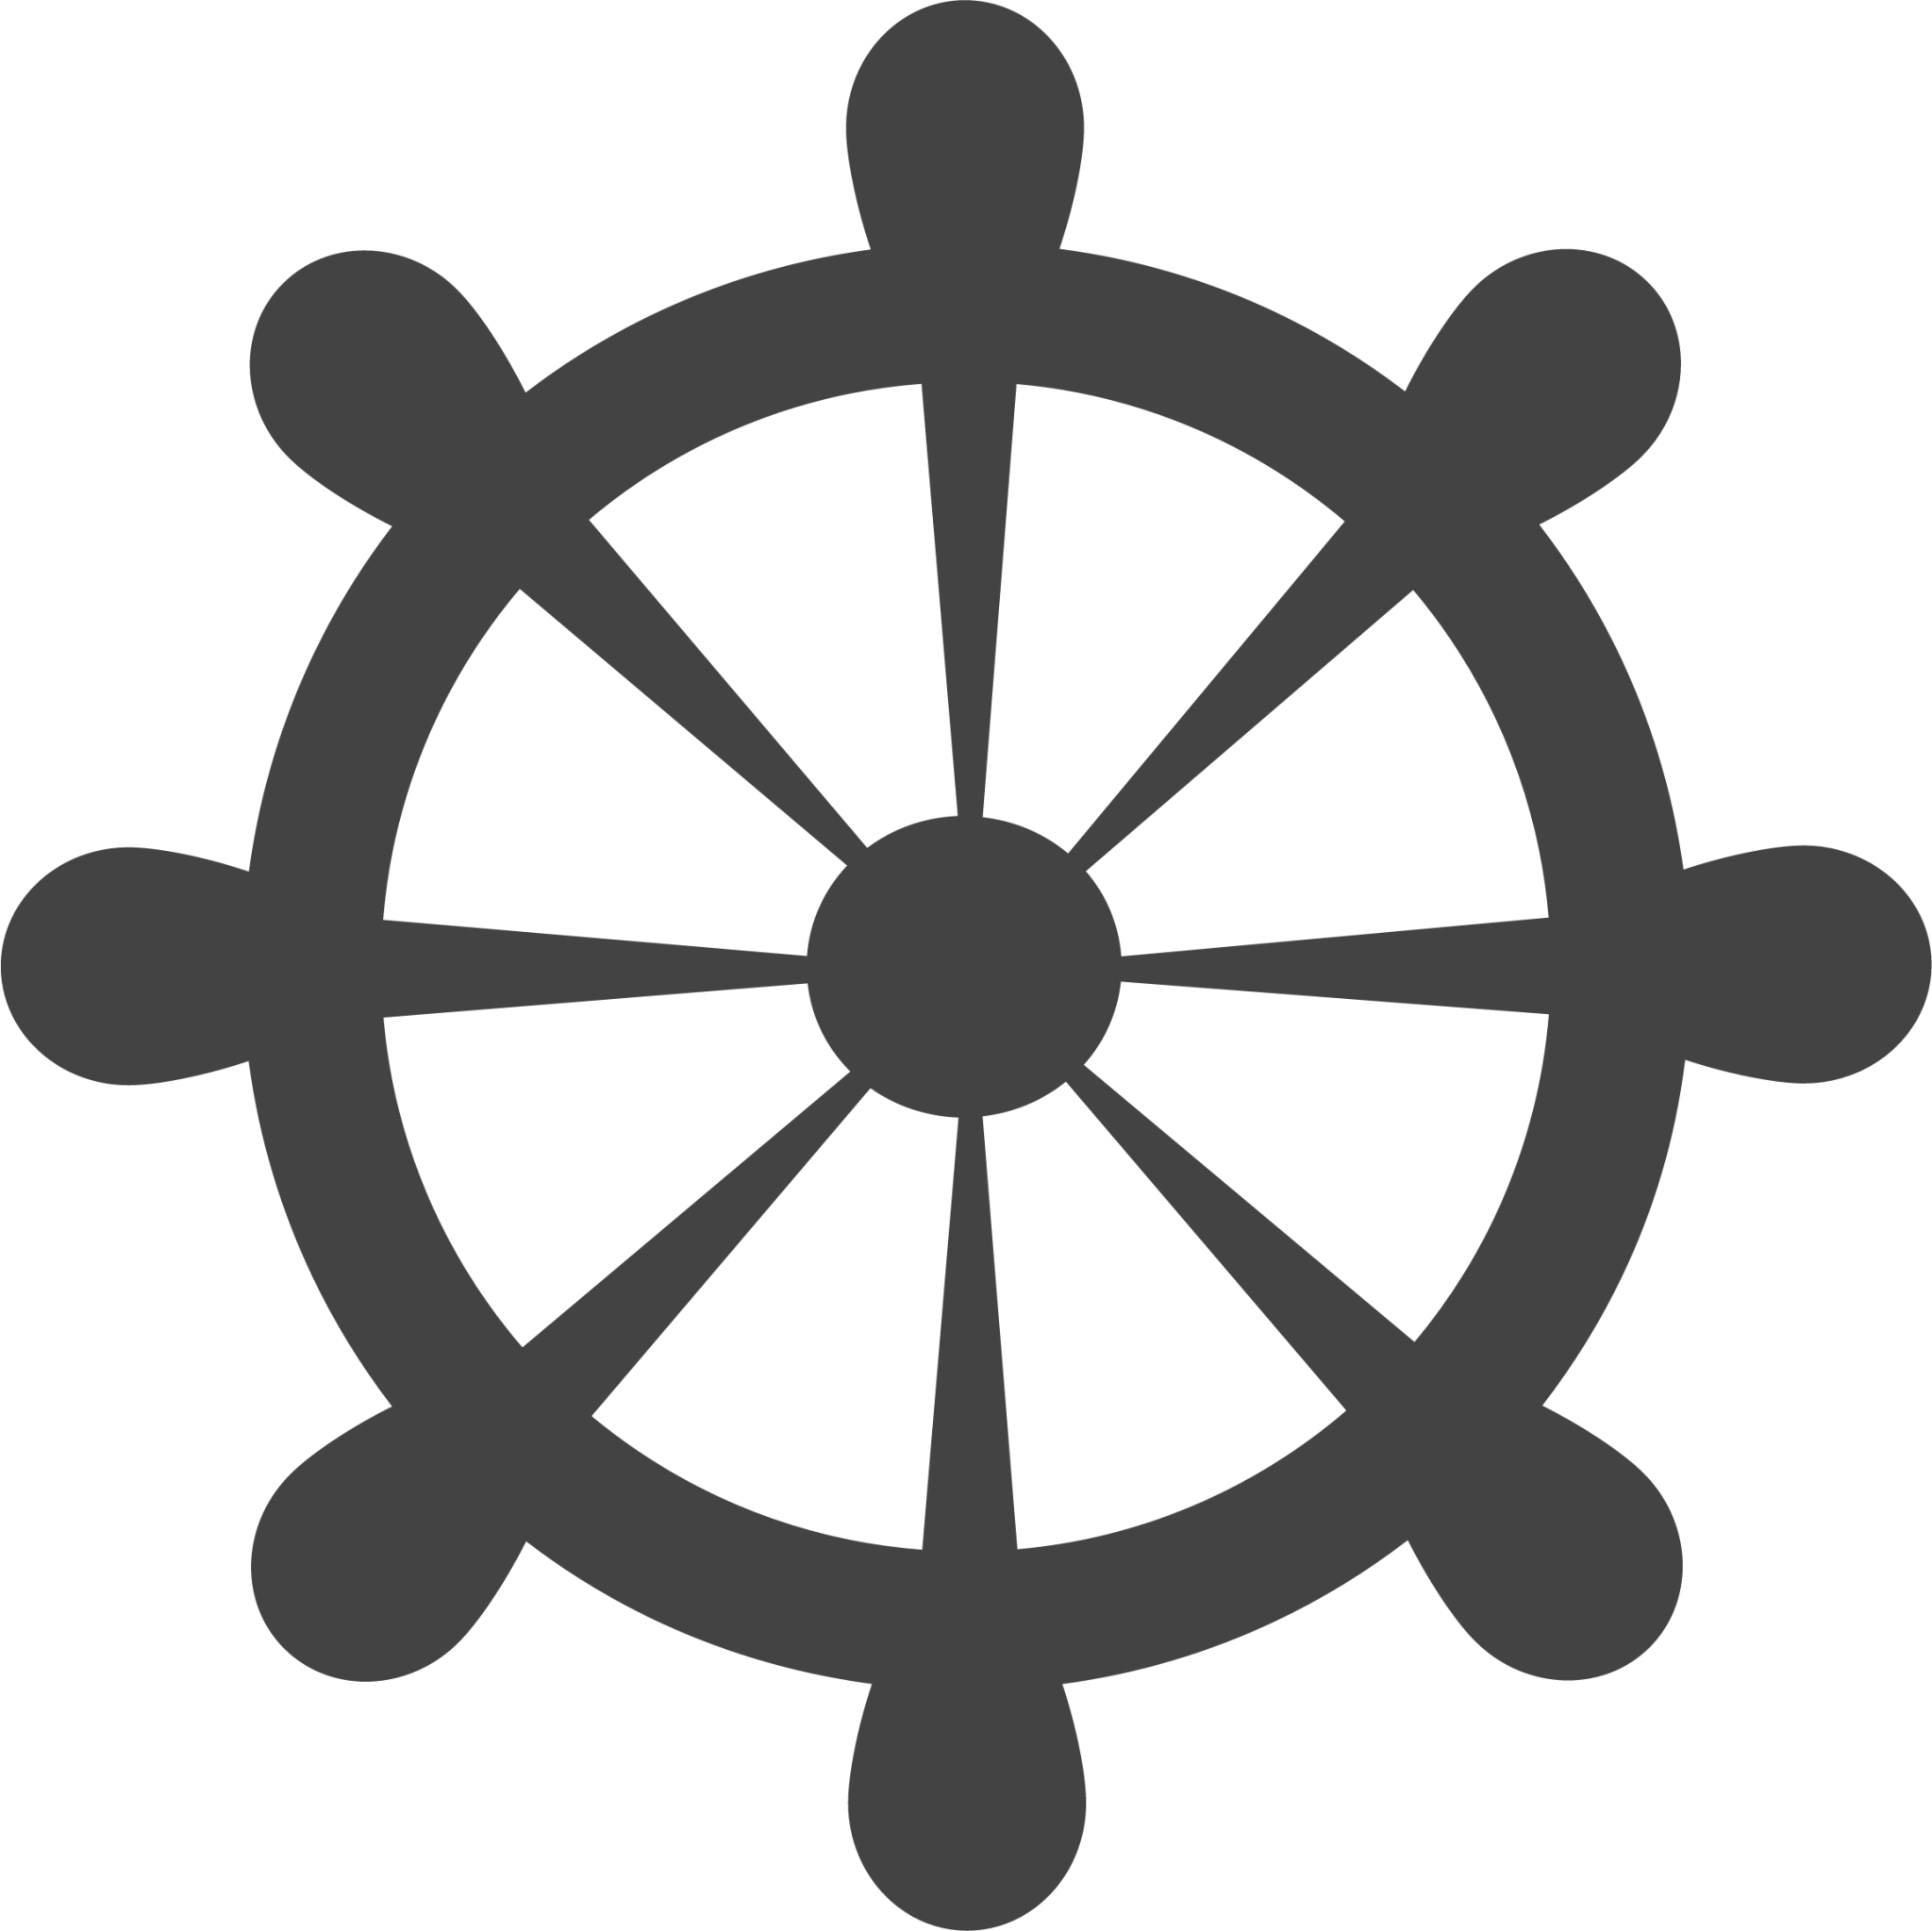 helm wheel icon